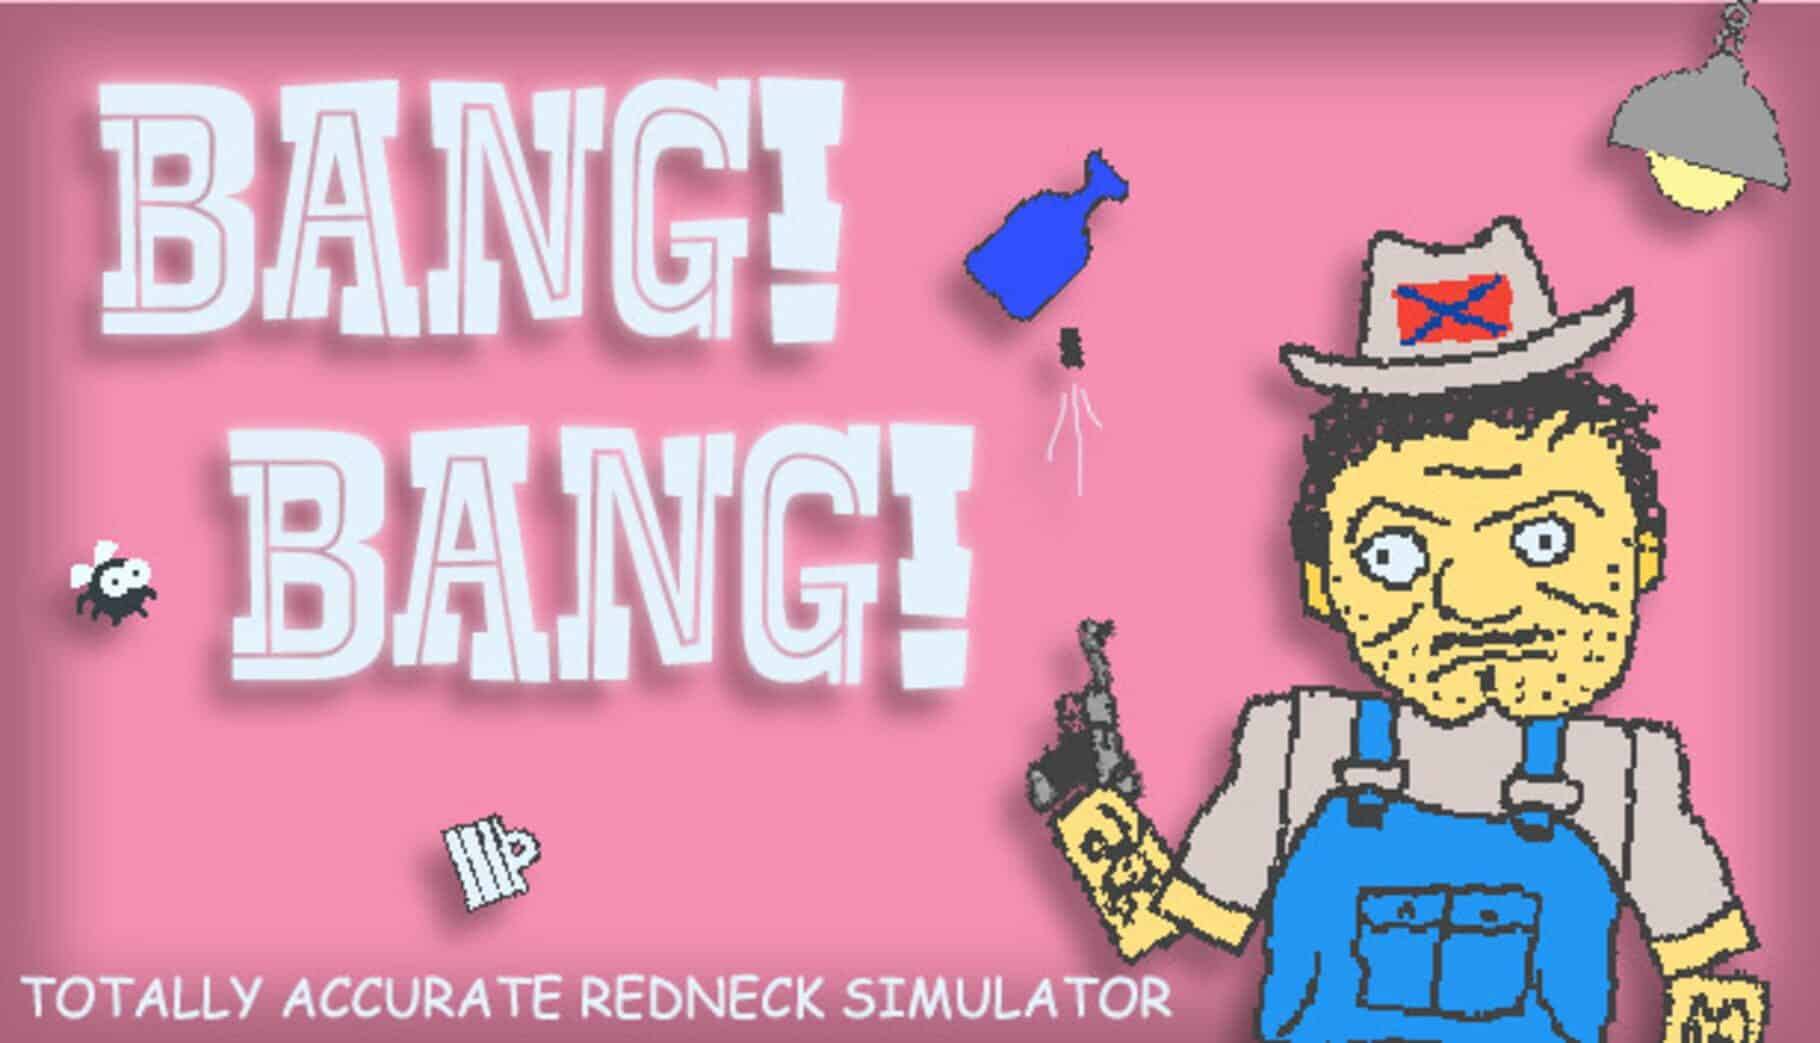 BANG! BANG! Totally Accurate Redneck Simulator